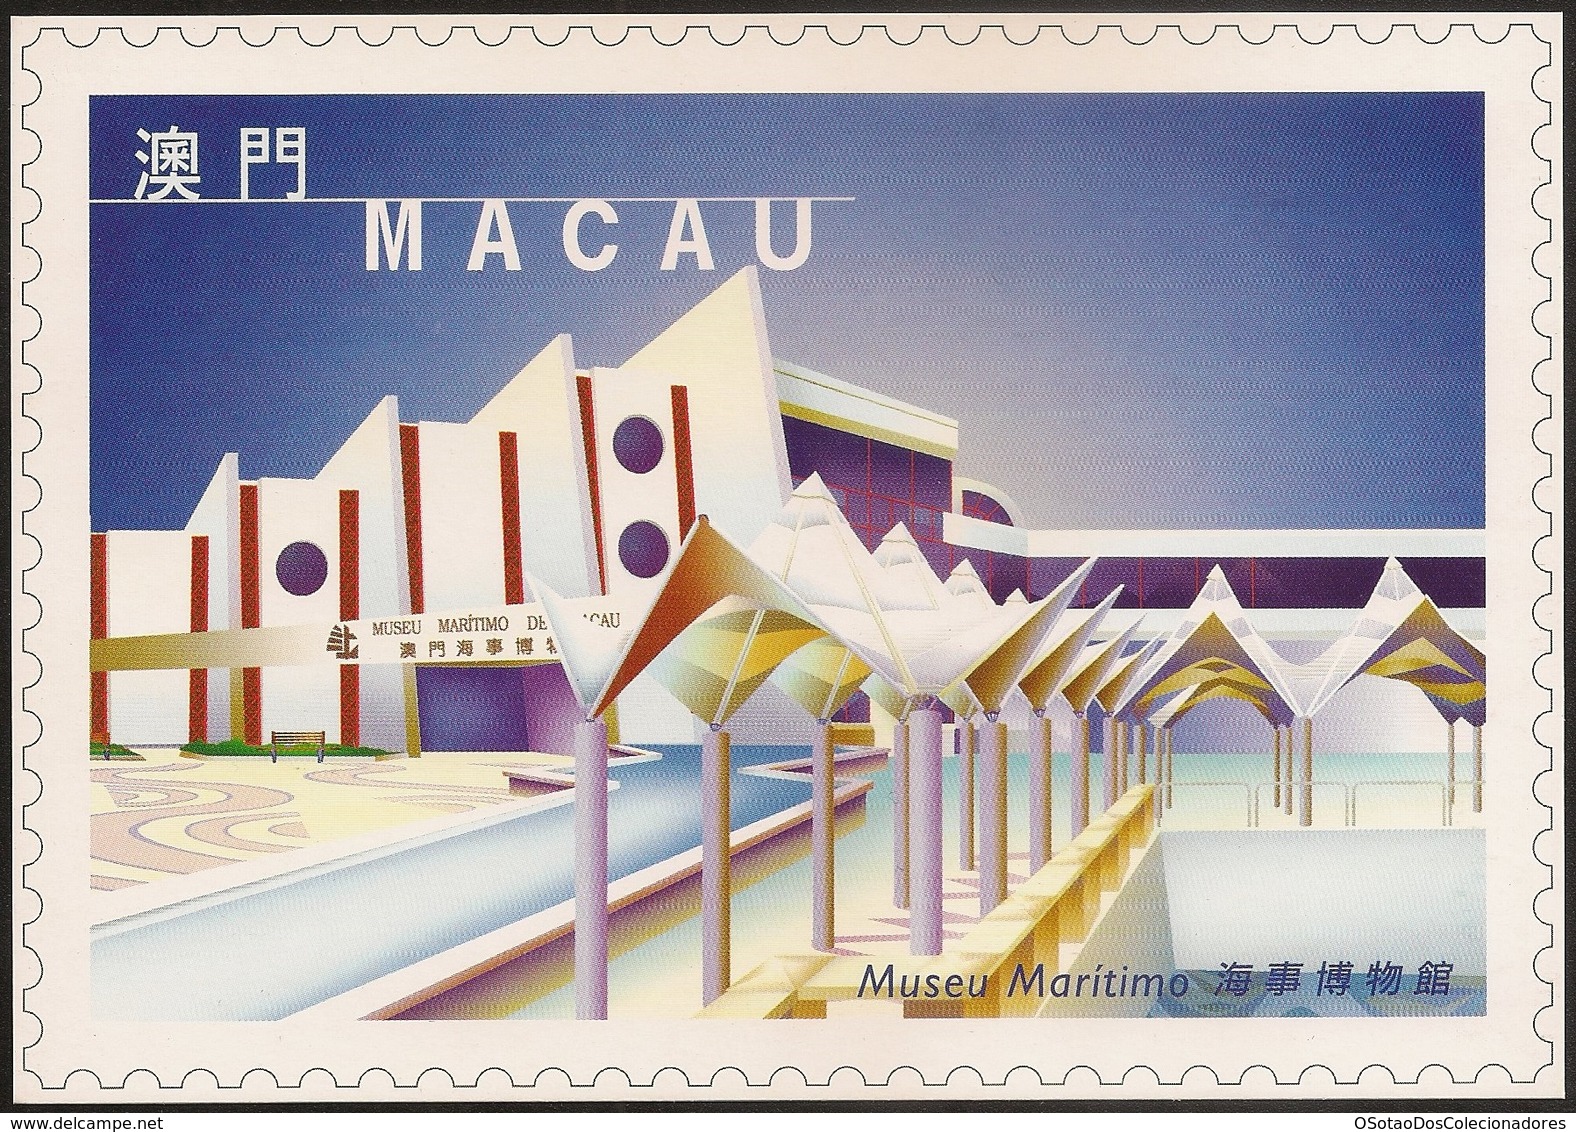 POSTAL MAXIMO - MAXIMUM CARD - Macau Macao Portugal 1999 - Obras Edifícios Modernos - Modern Architecture Museu Maritimo - Postal Stationery